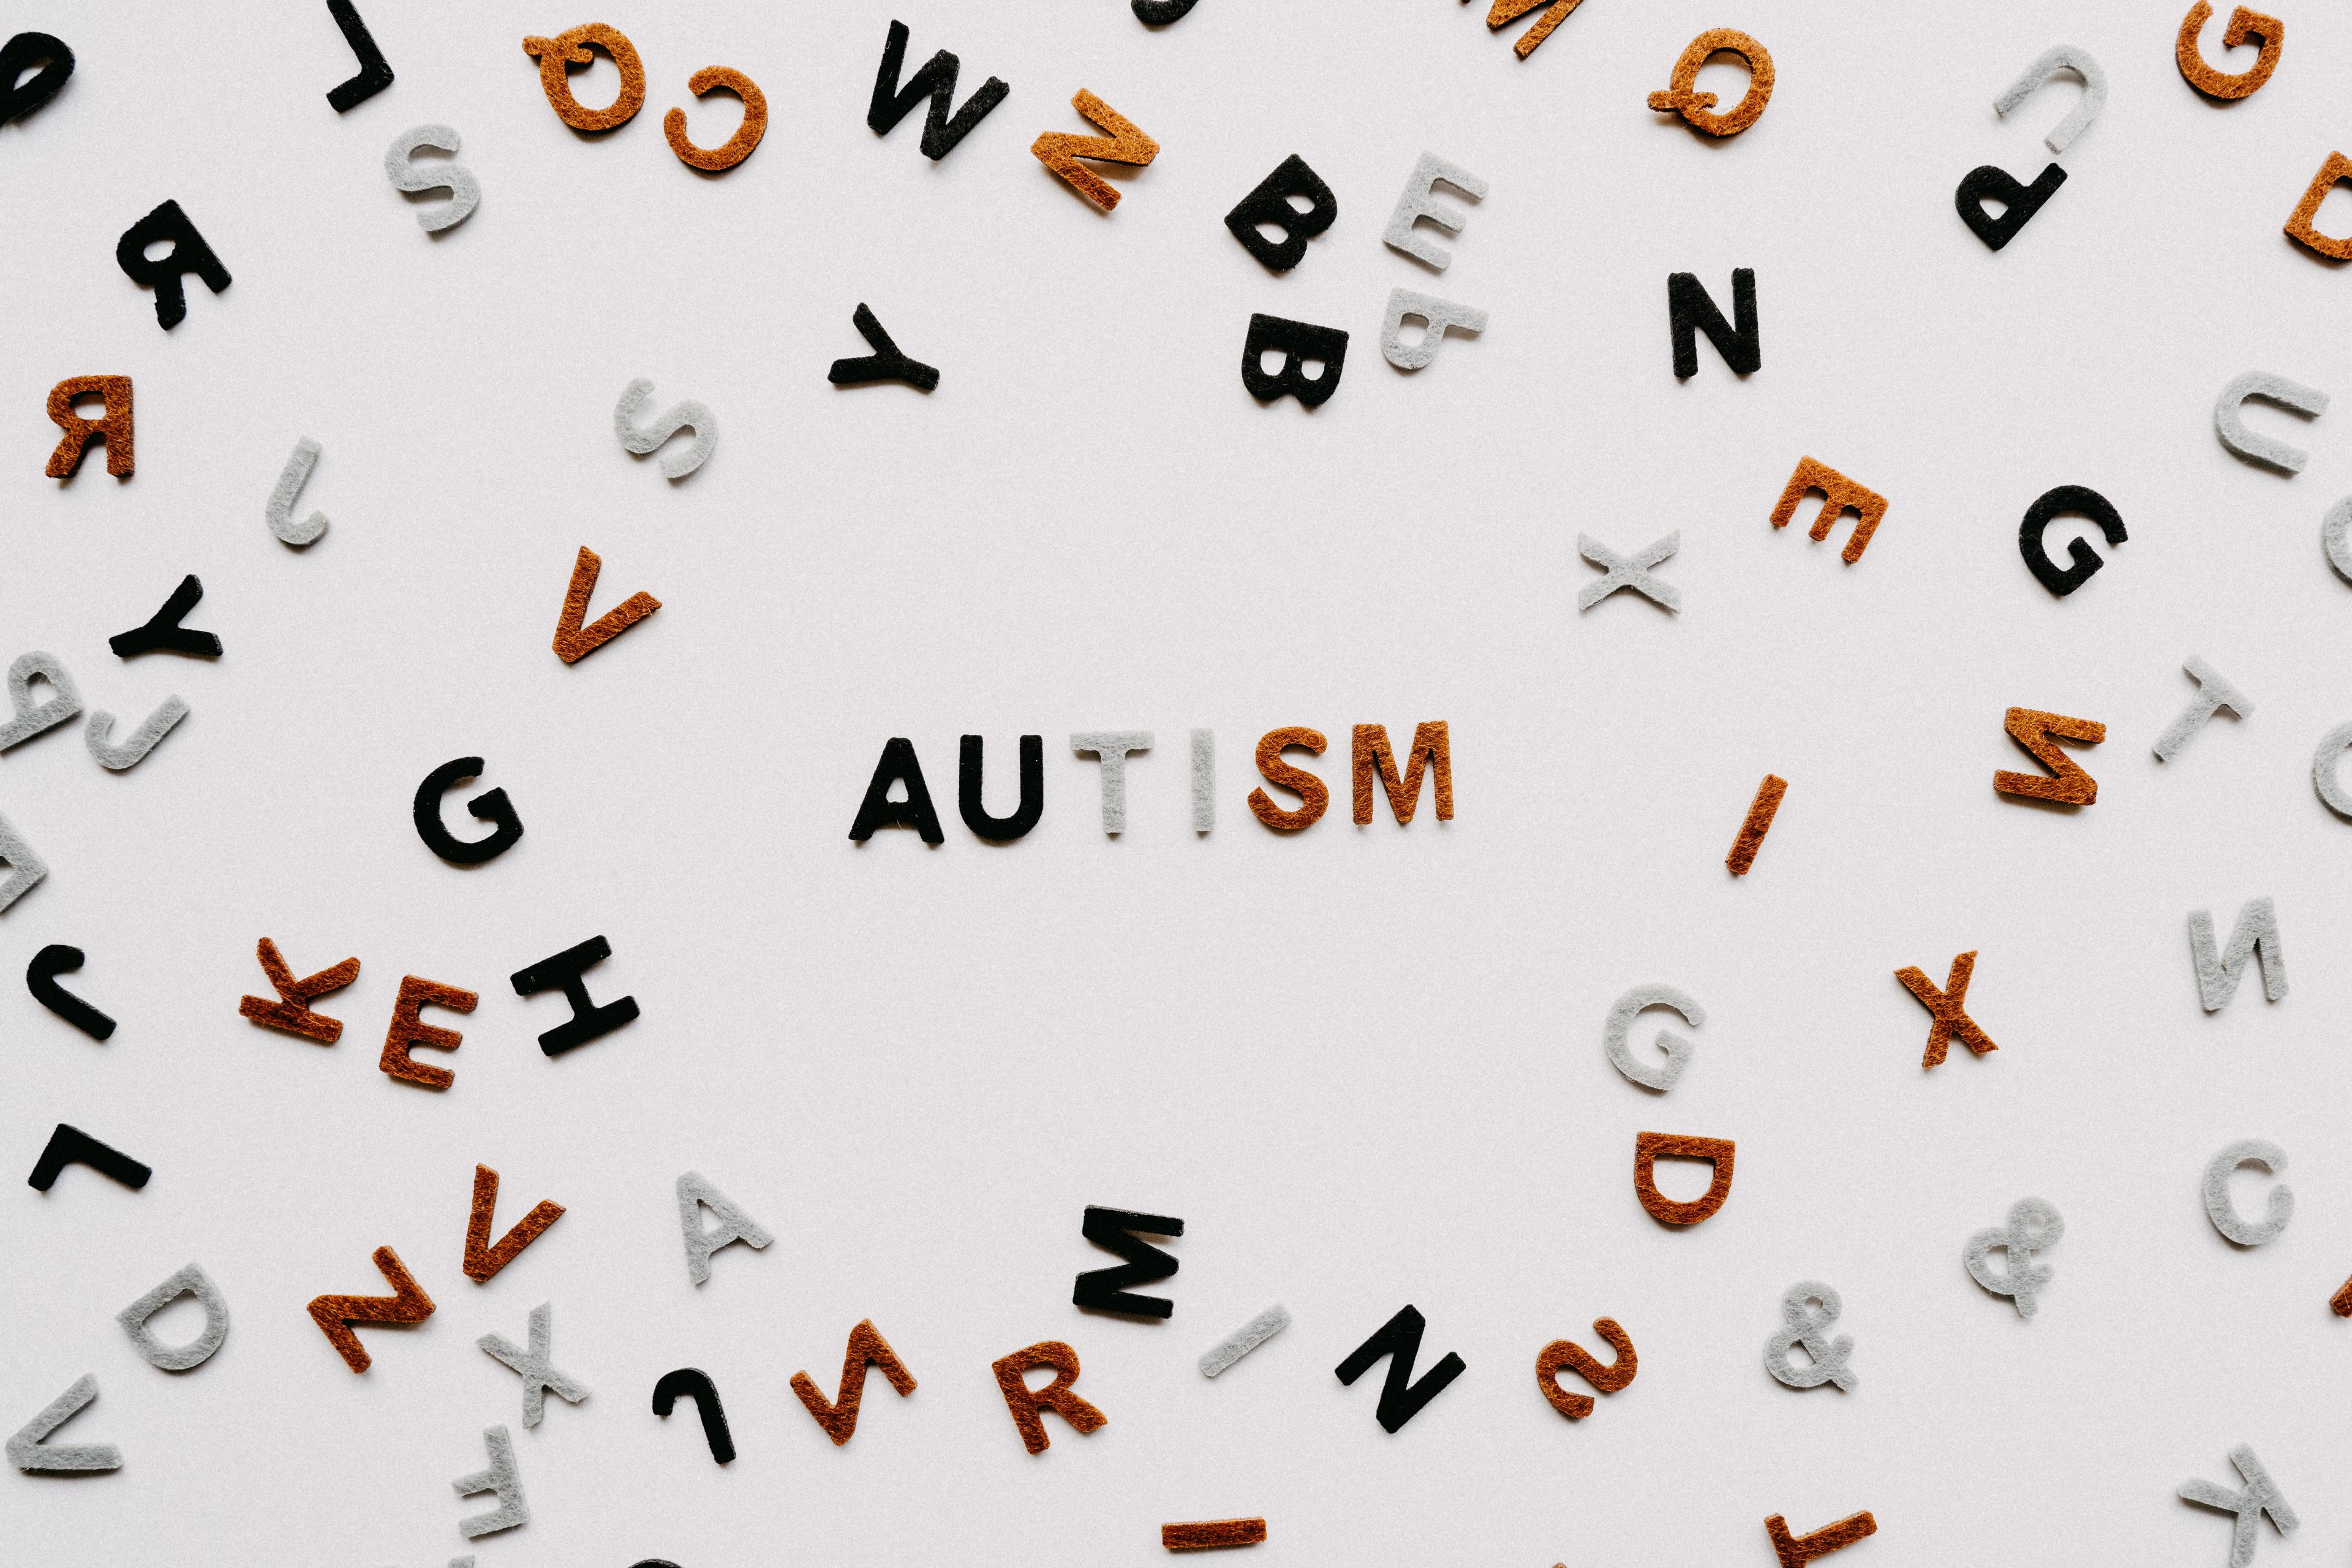 Zespół Klinefeltera: Diagnoza, objawy i rozwiązania terapeutyczne. Autyzm a niepełnosprawność intelektualna. Jak leczy się choroby genetyczne? 